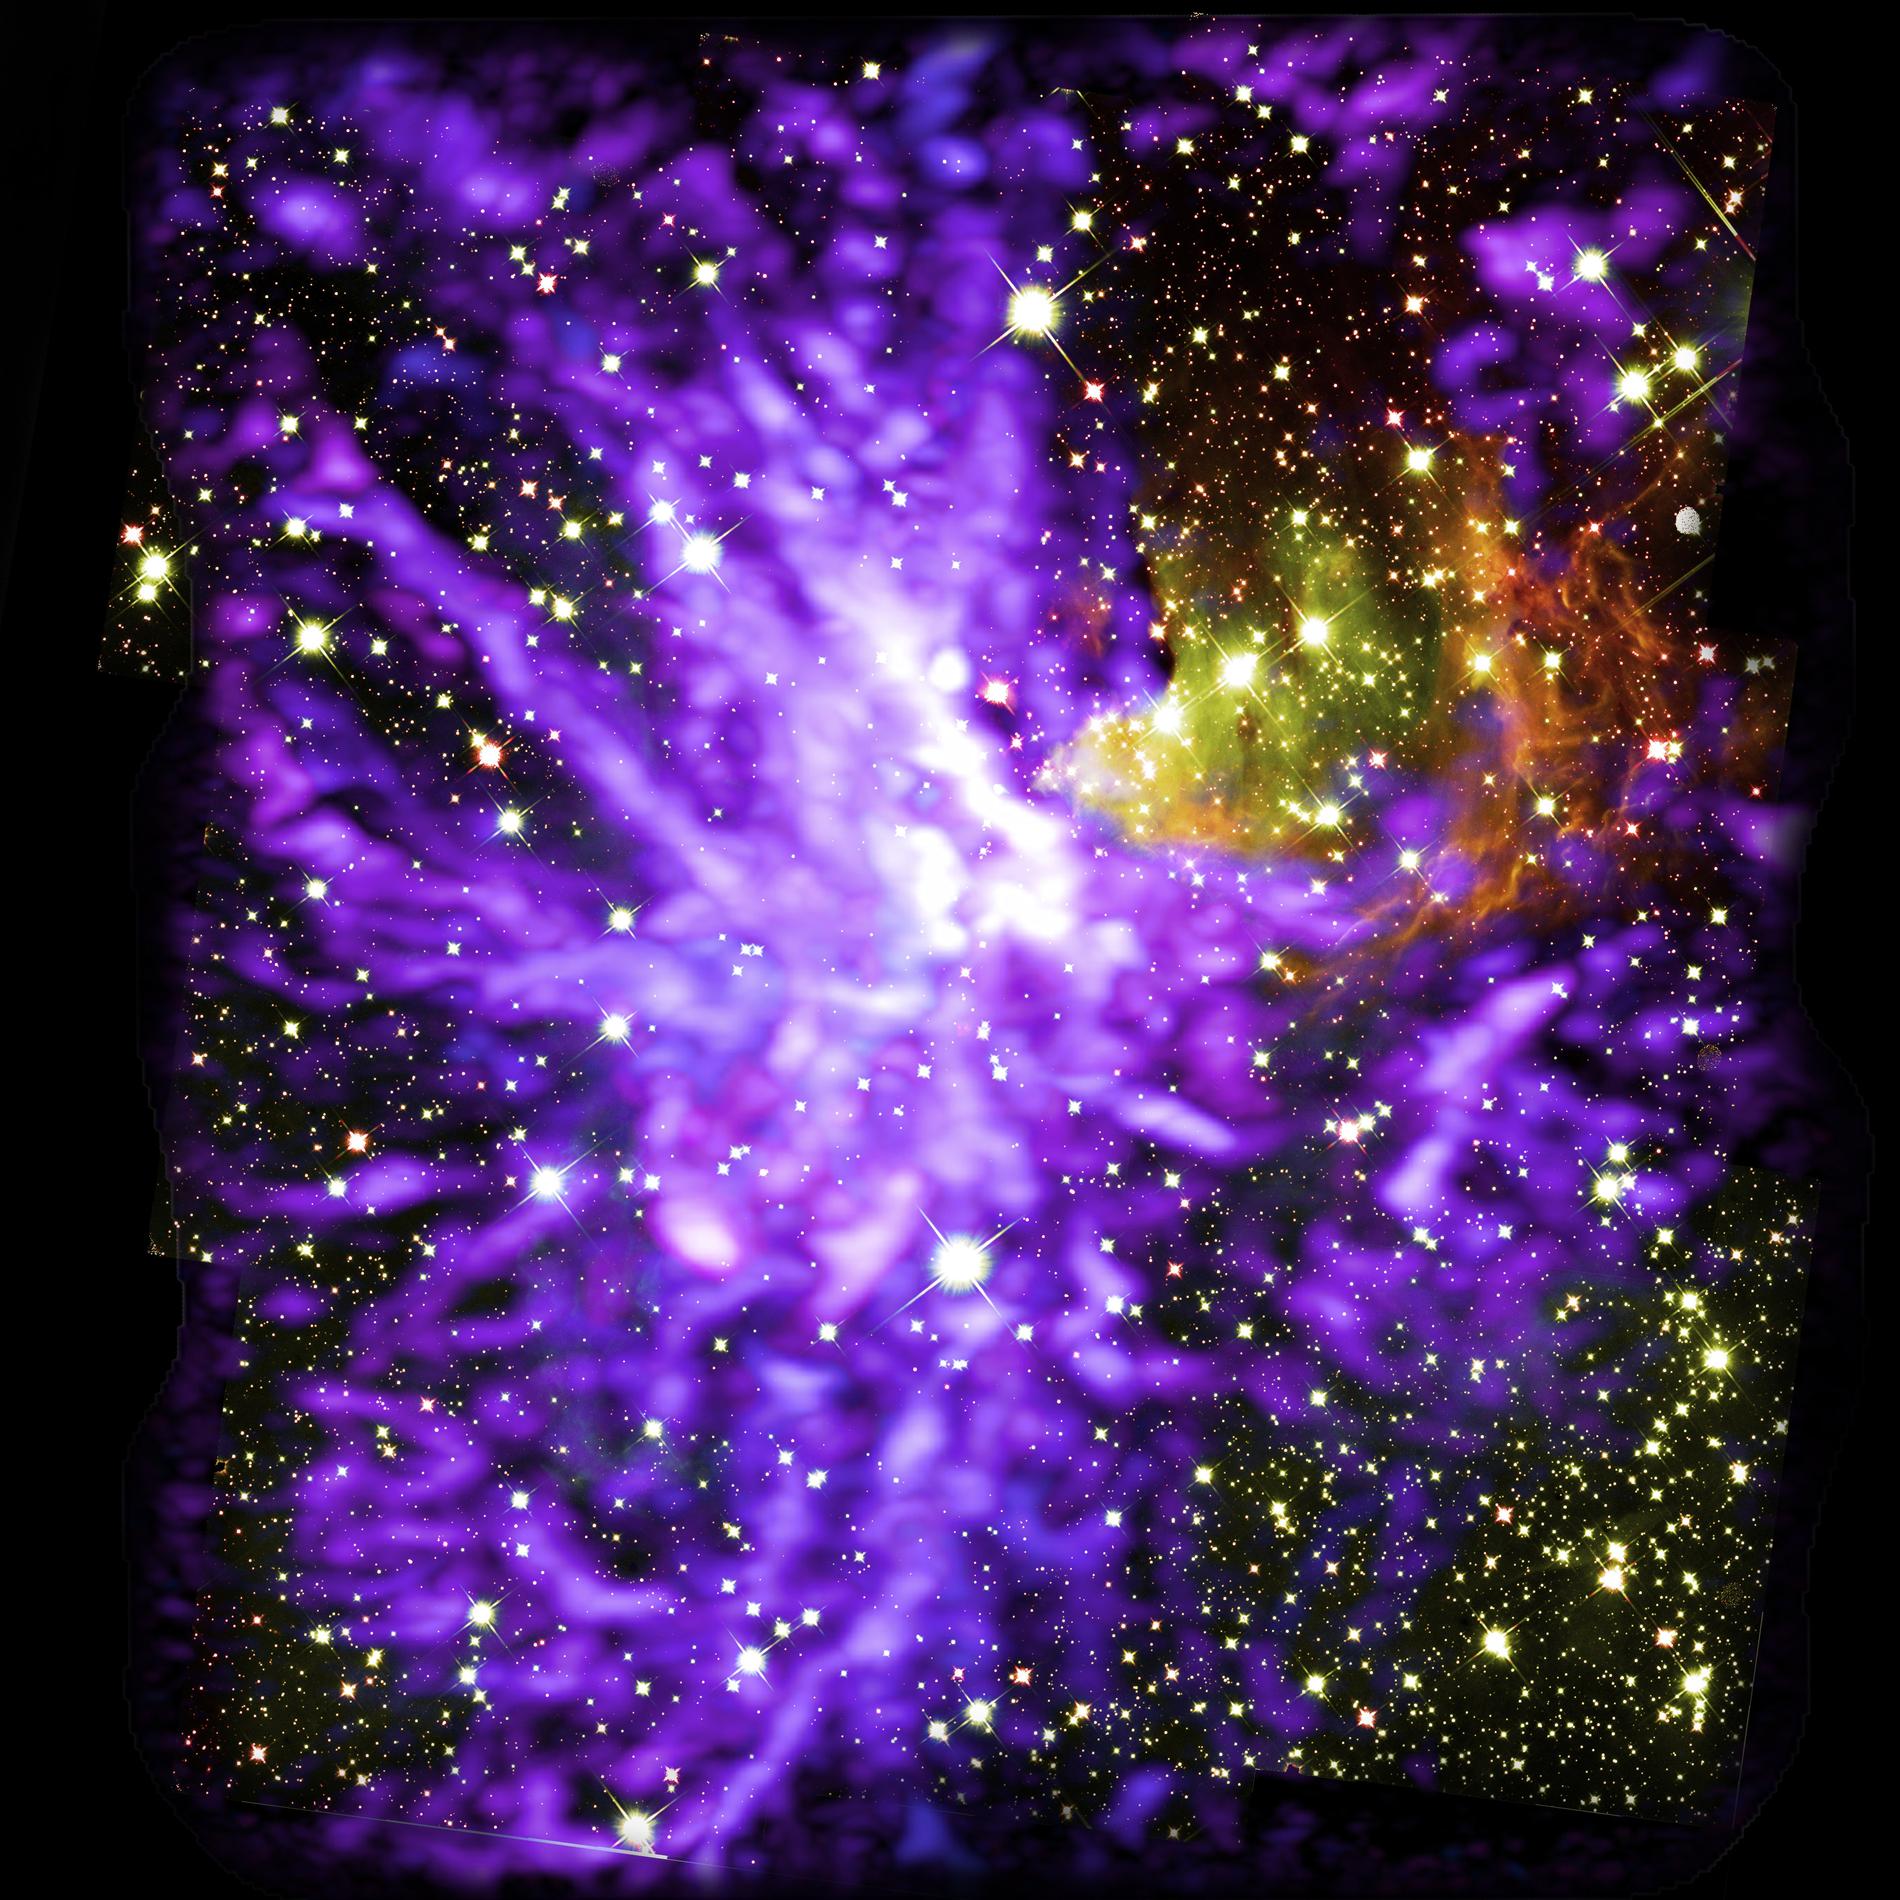 Stjärnor i olika utvecklingsfaser omgivna av molekylär gas (lila).